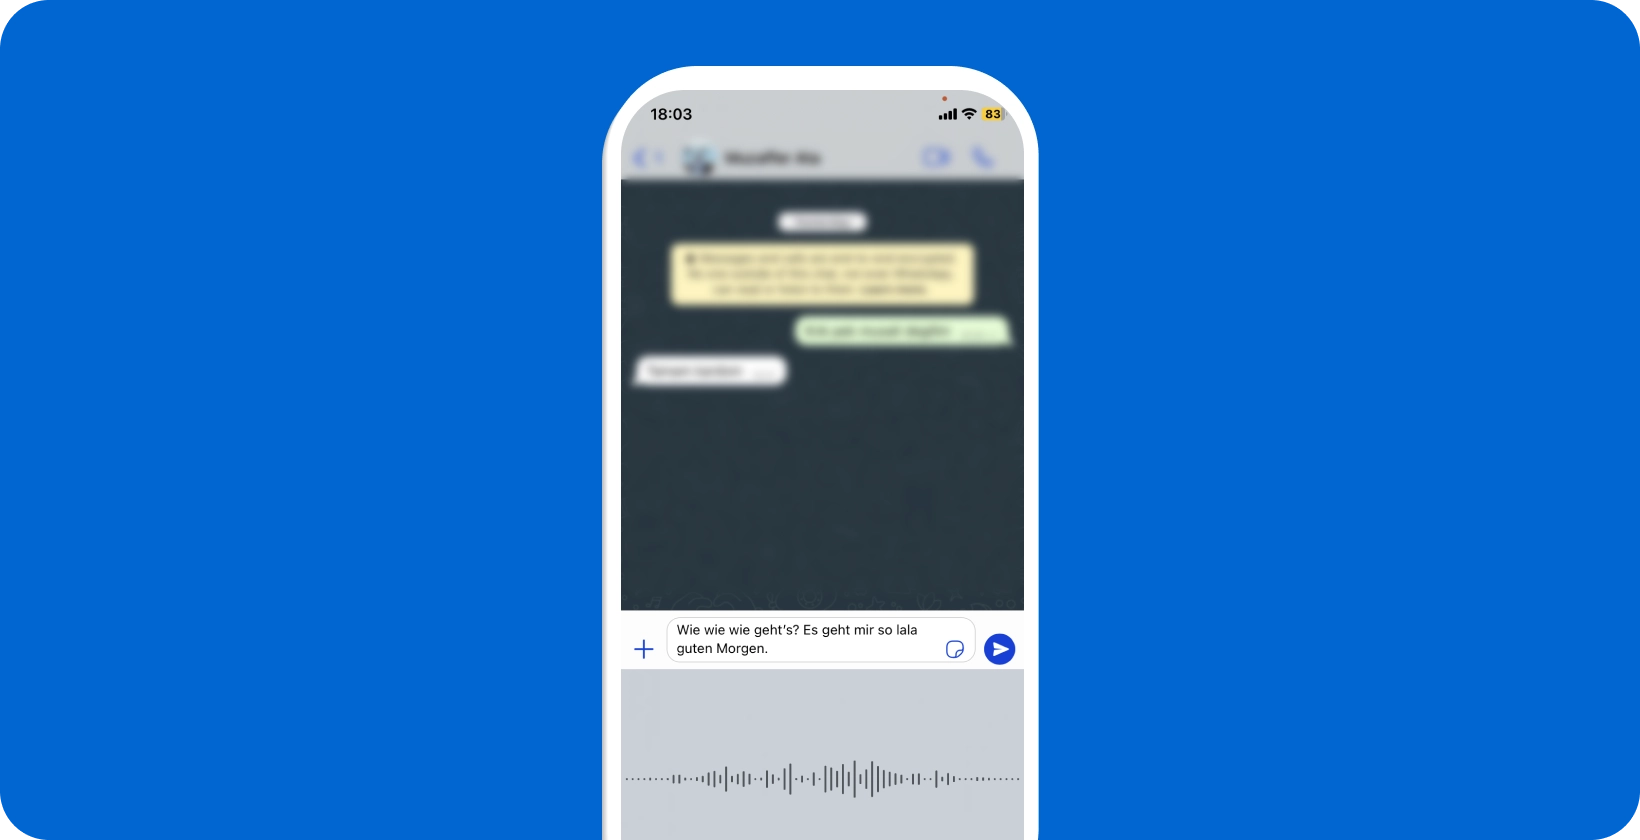 Smartfon pokazujący dyktowanie głosowe WhatsApp w toku, prezentujący konwersję mowy na tekst w czasie rzeczywistym.